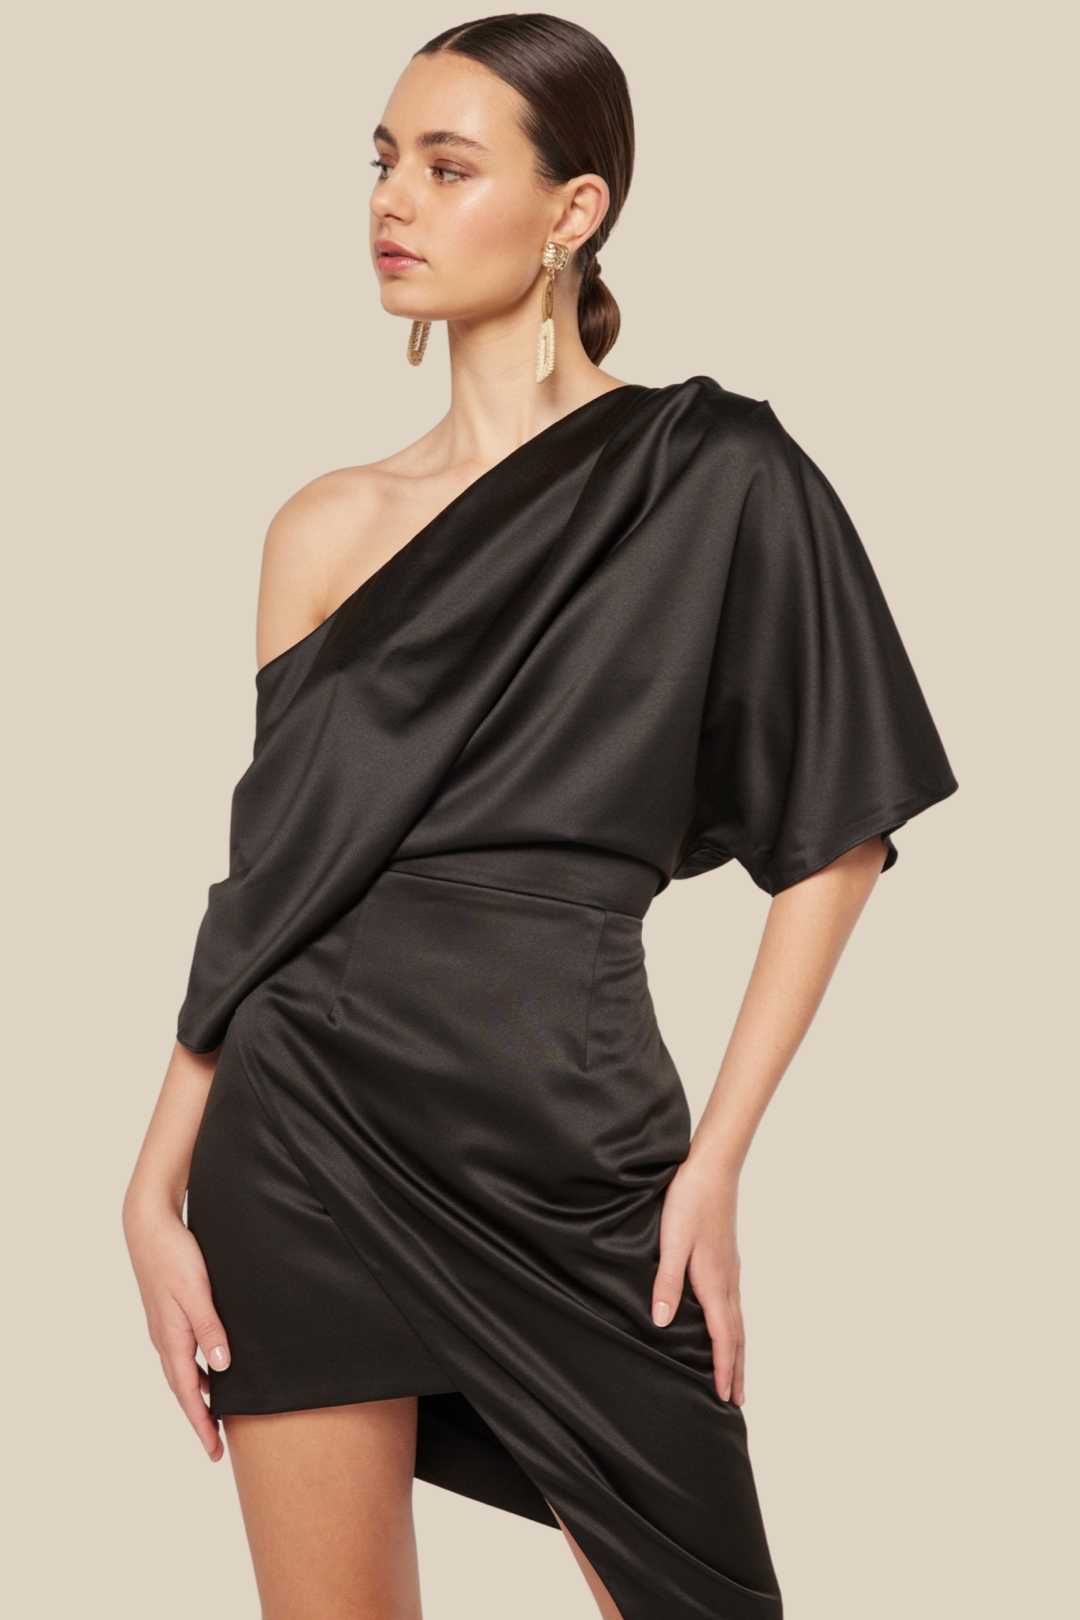 Grecian Dress, Black